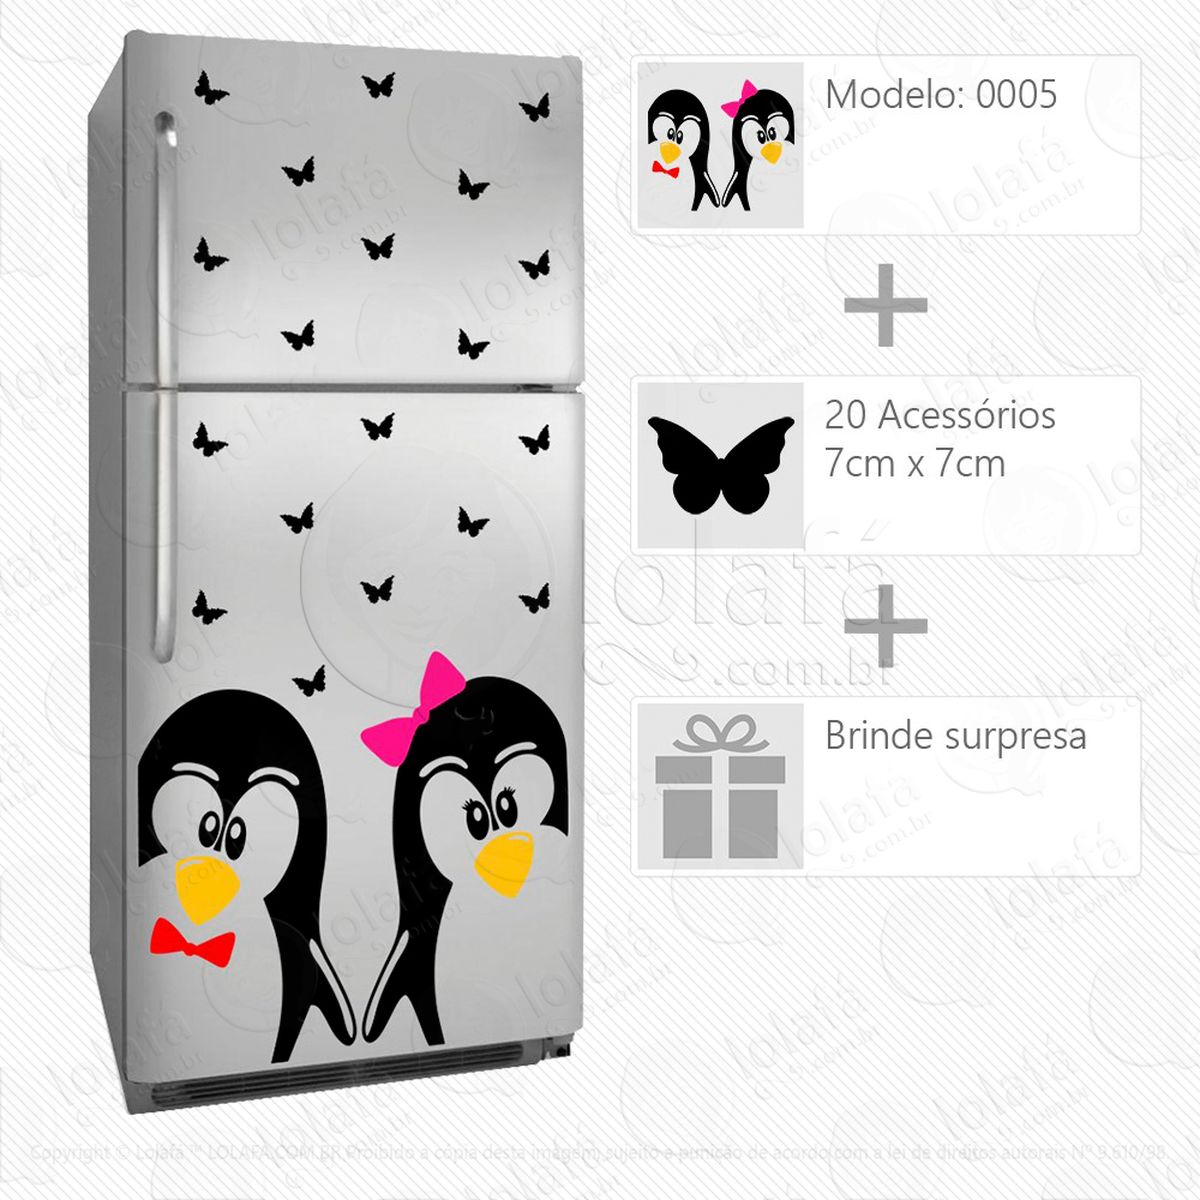 pinguins adesivo para geladeira e frigobar - mod:5